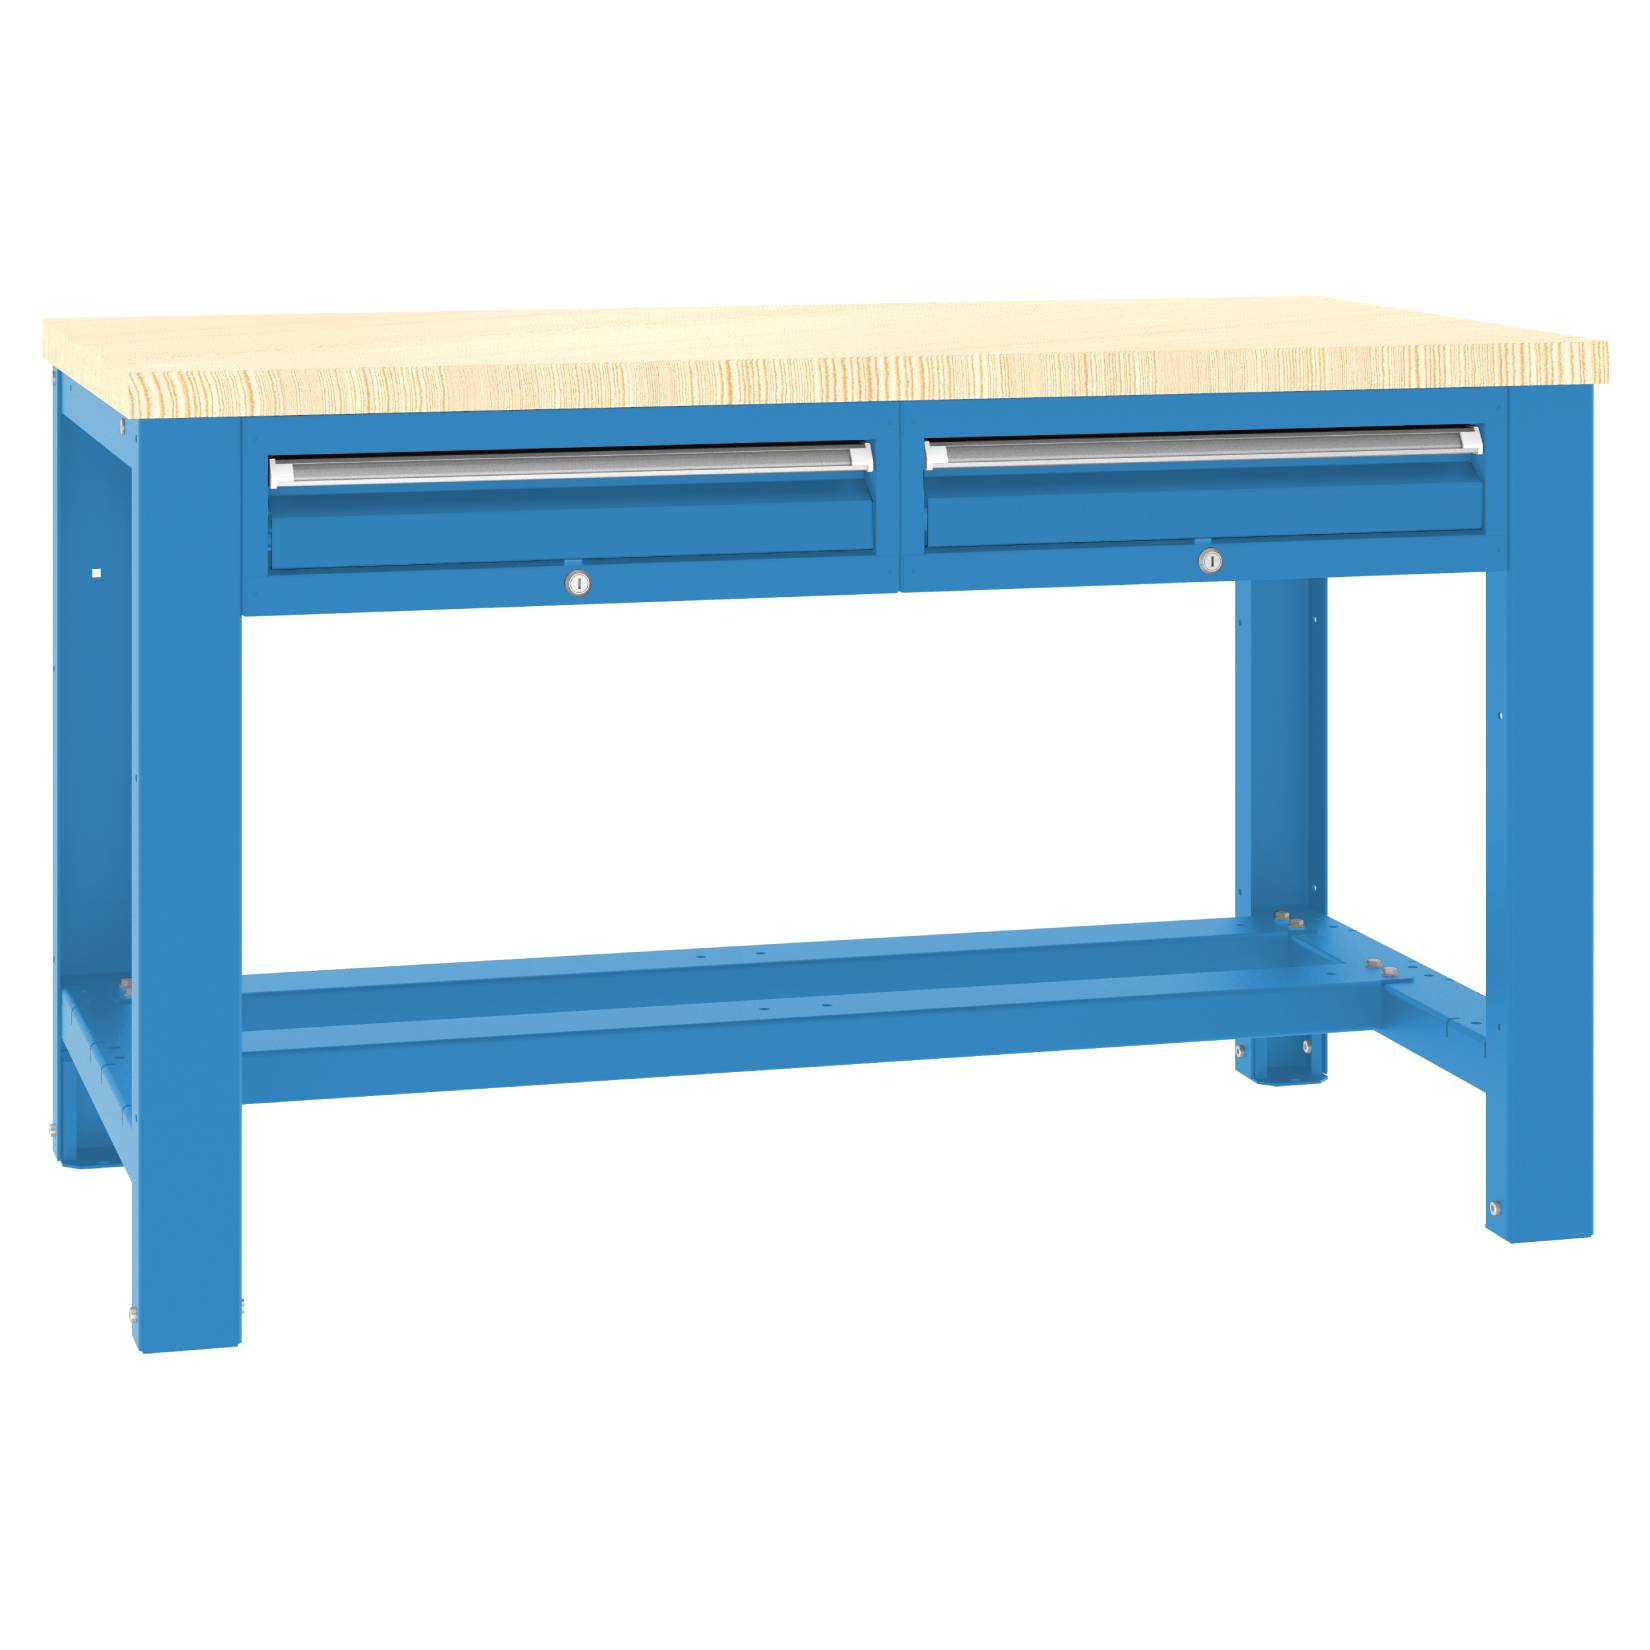 Stół roboczy do garażu ST14/02 w kolorze niebieskim firmy Malow